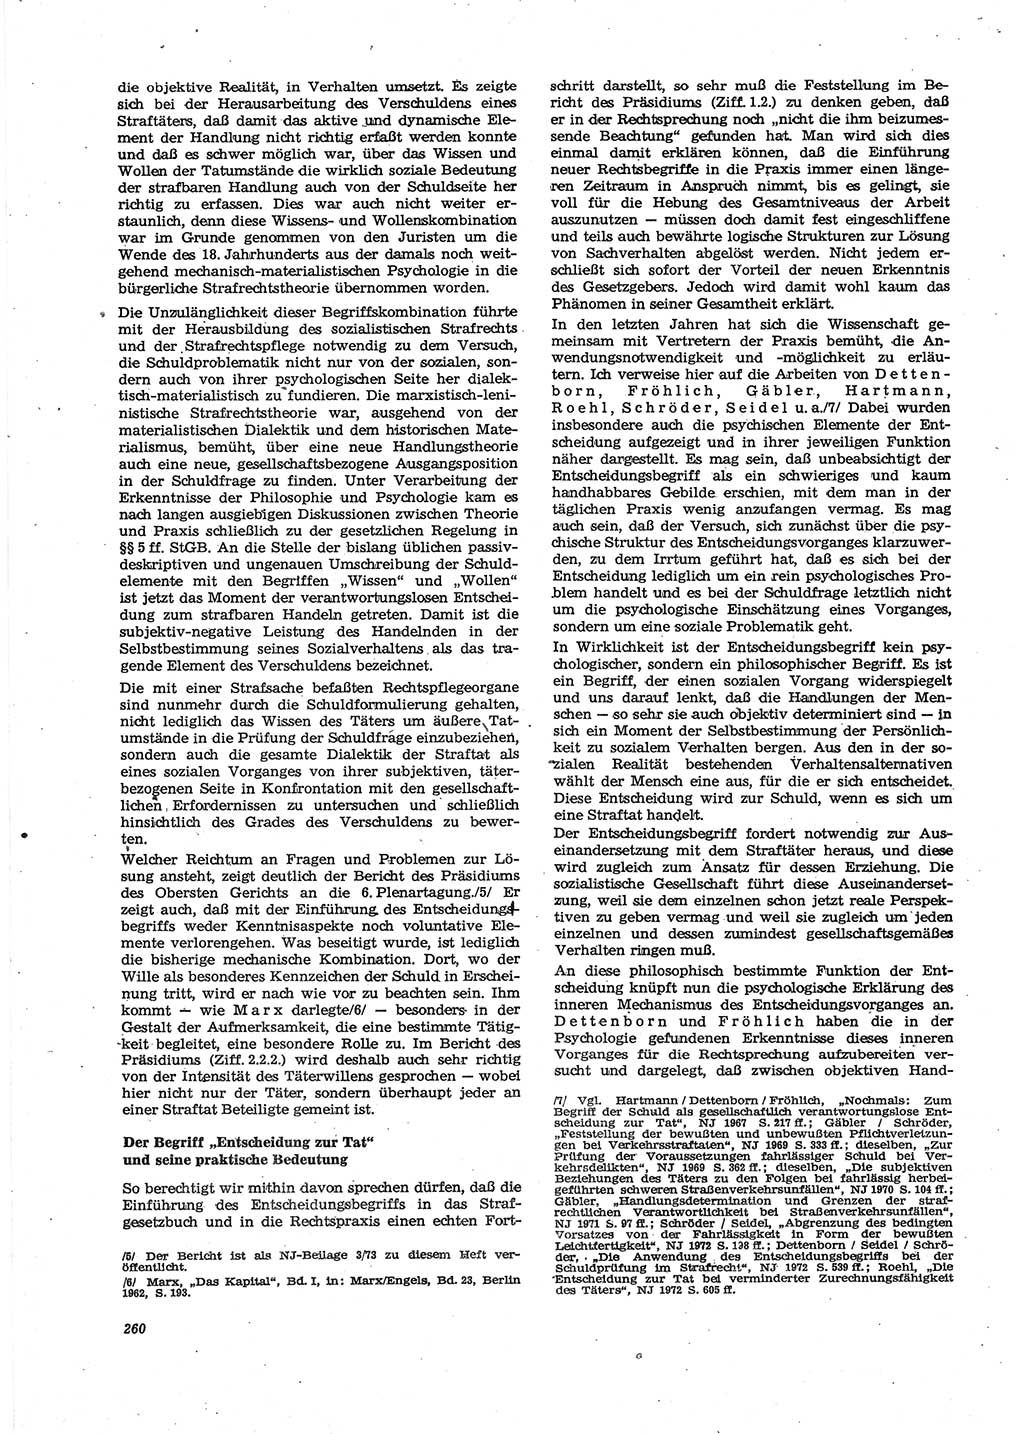 Neue Justiz (NJ), Zeitschrift für Recht und Rechtswissenschaft [Deutsche Demokratische Republik (DDR)], 27. Jahrgang 1973, Seite 260 (NJ DDR 1973, S. 260)